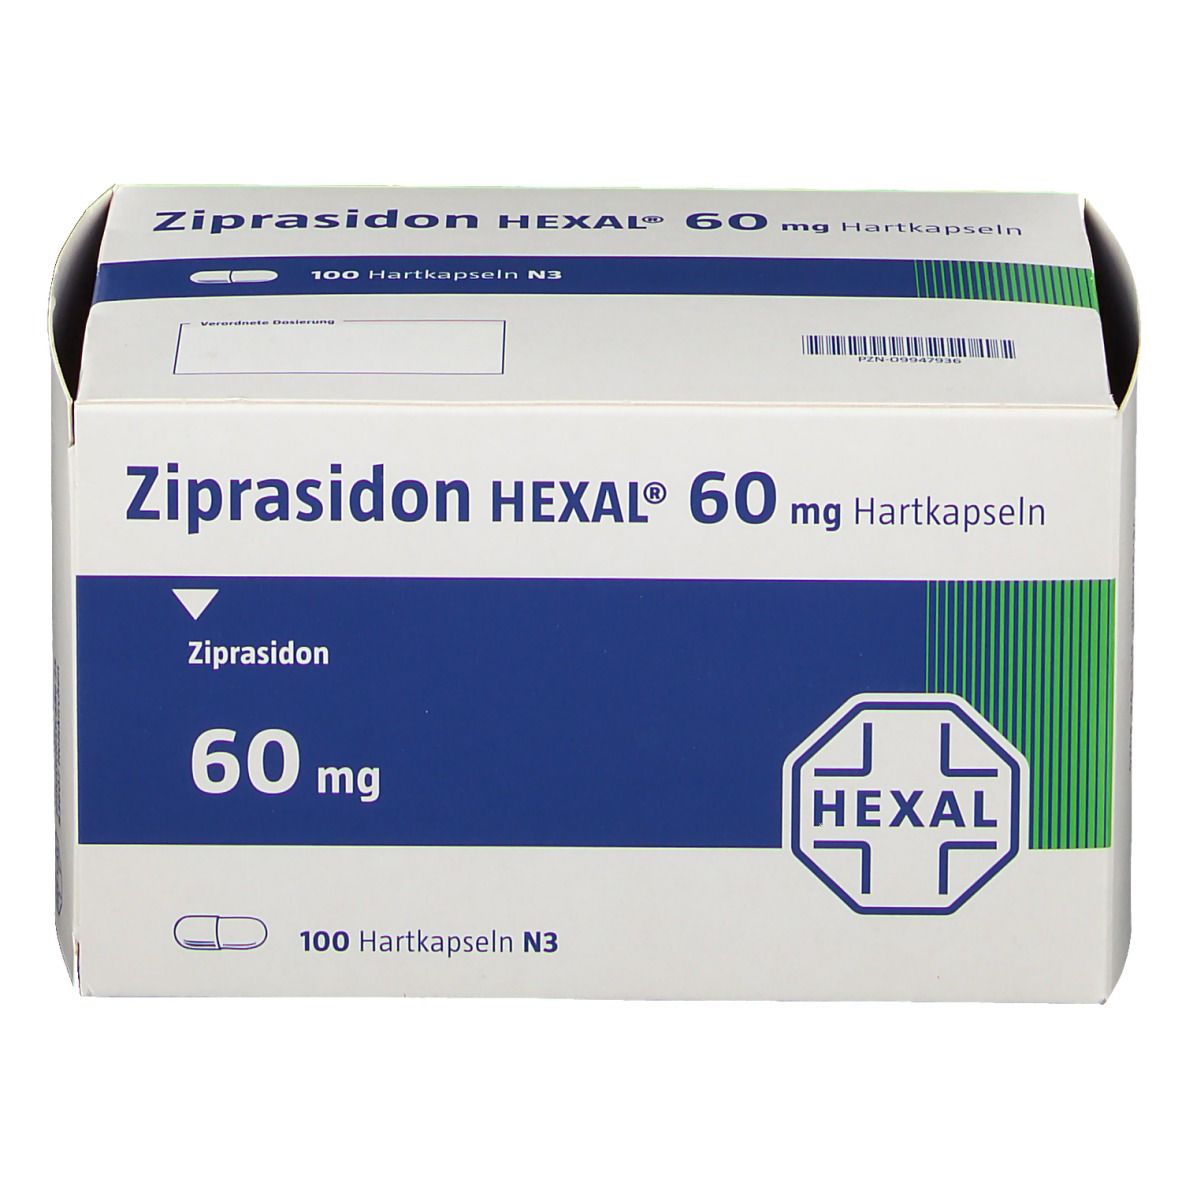 Zipradison HEXAL® 60 mg